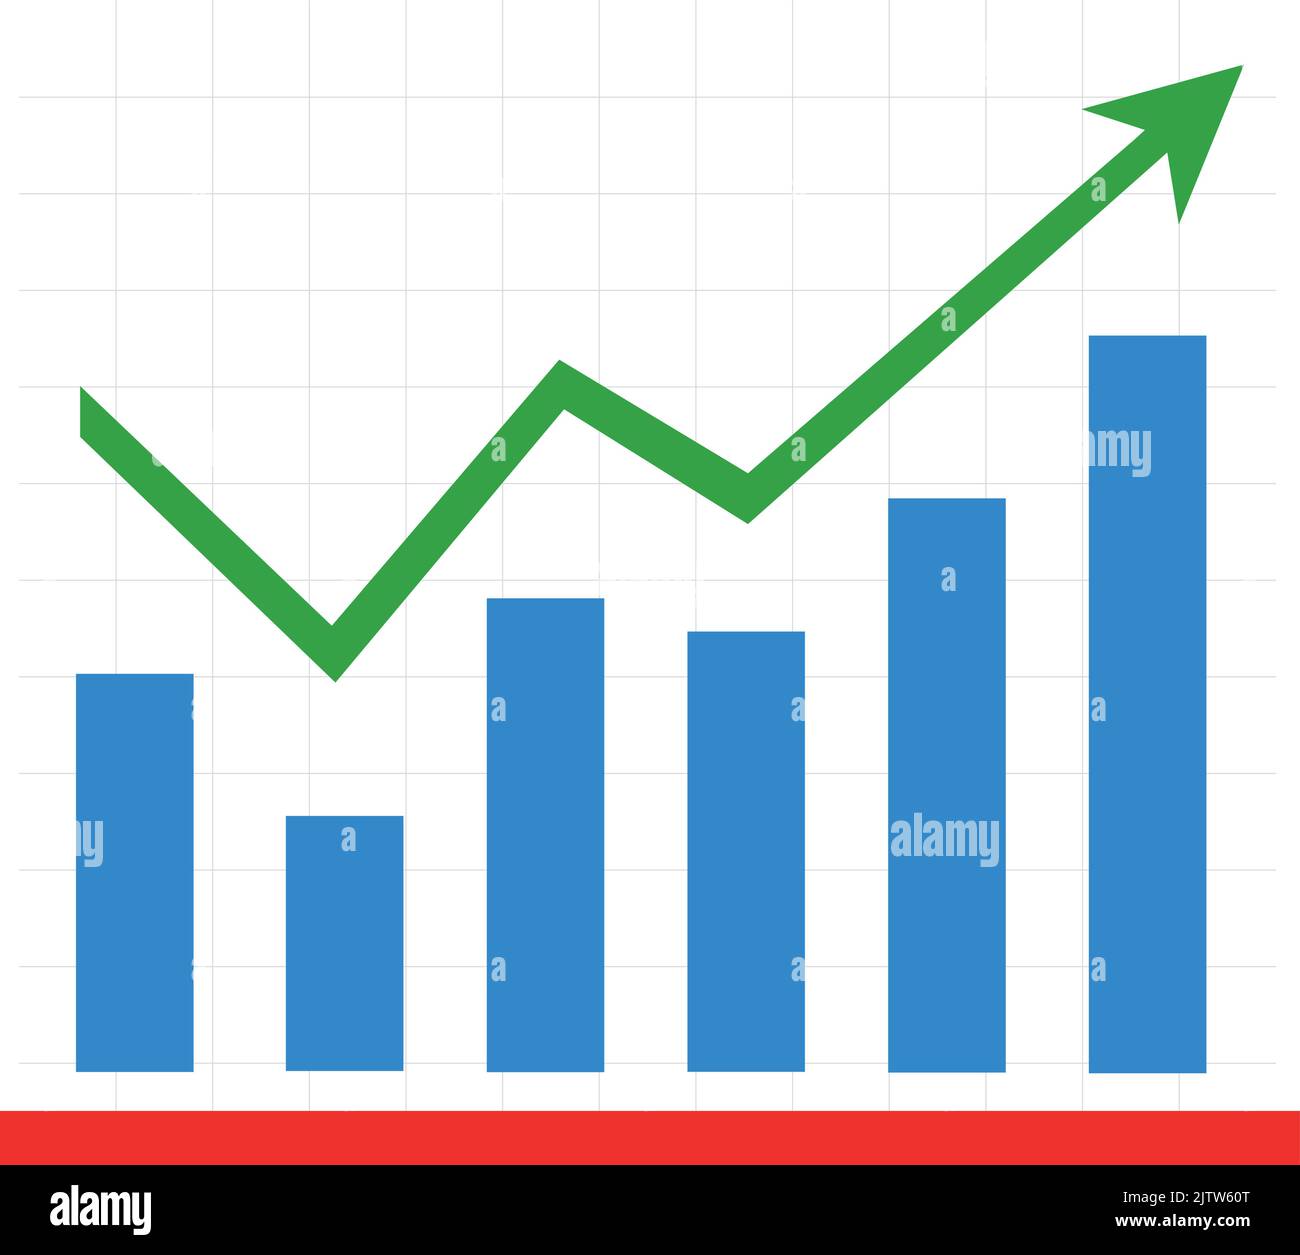 Illustrazione vettoriale di un grafico a barre statistico, con una freccia verde con un trend verso l'alto Illustrazione Vettoriale